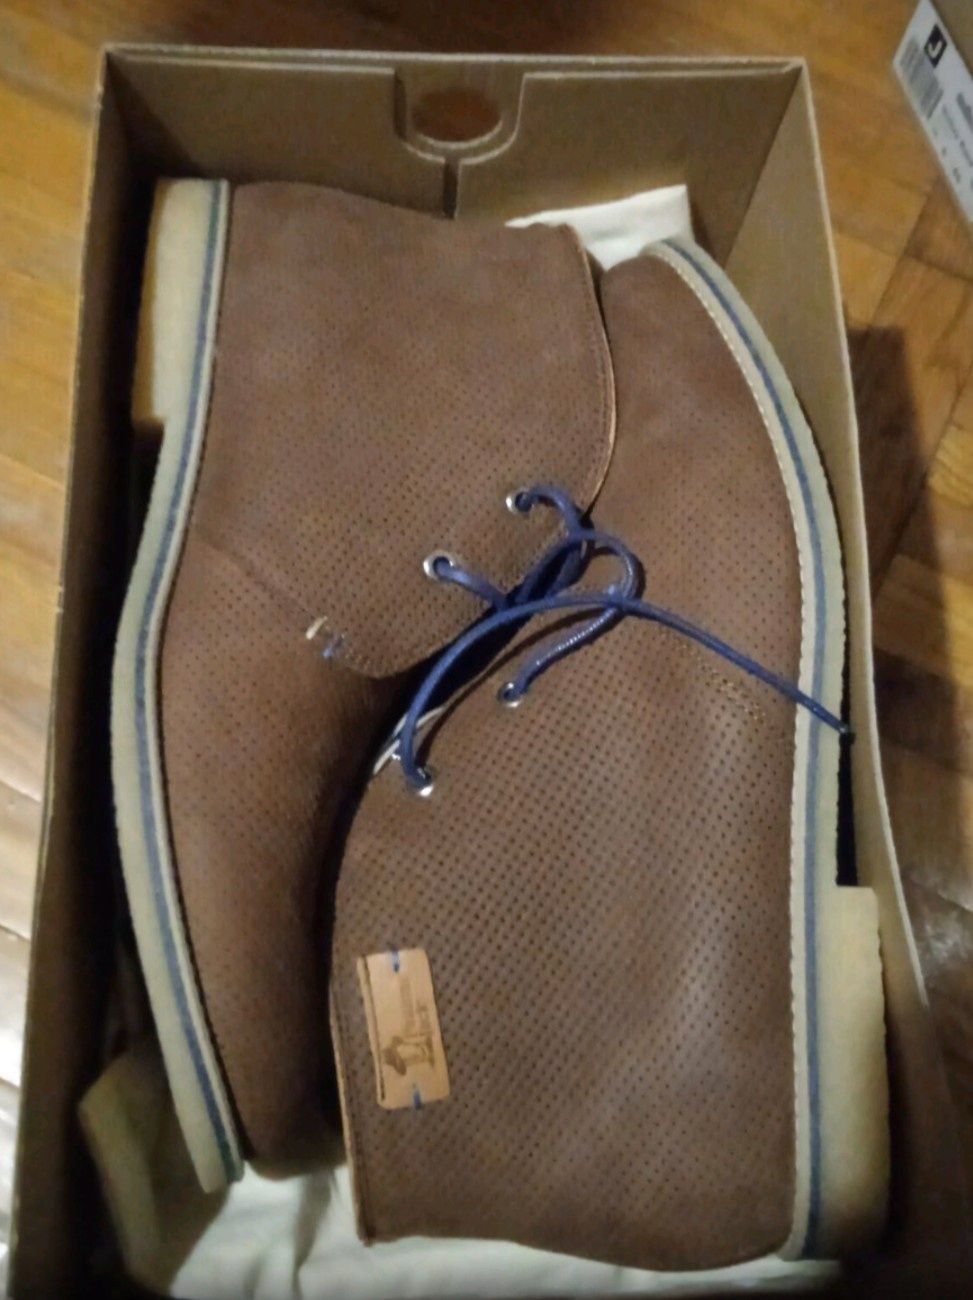 Panama Jack р.44 стельки-29см Испания кожаные ботинки мужские